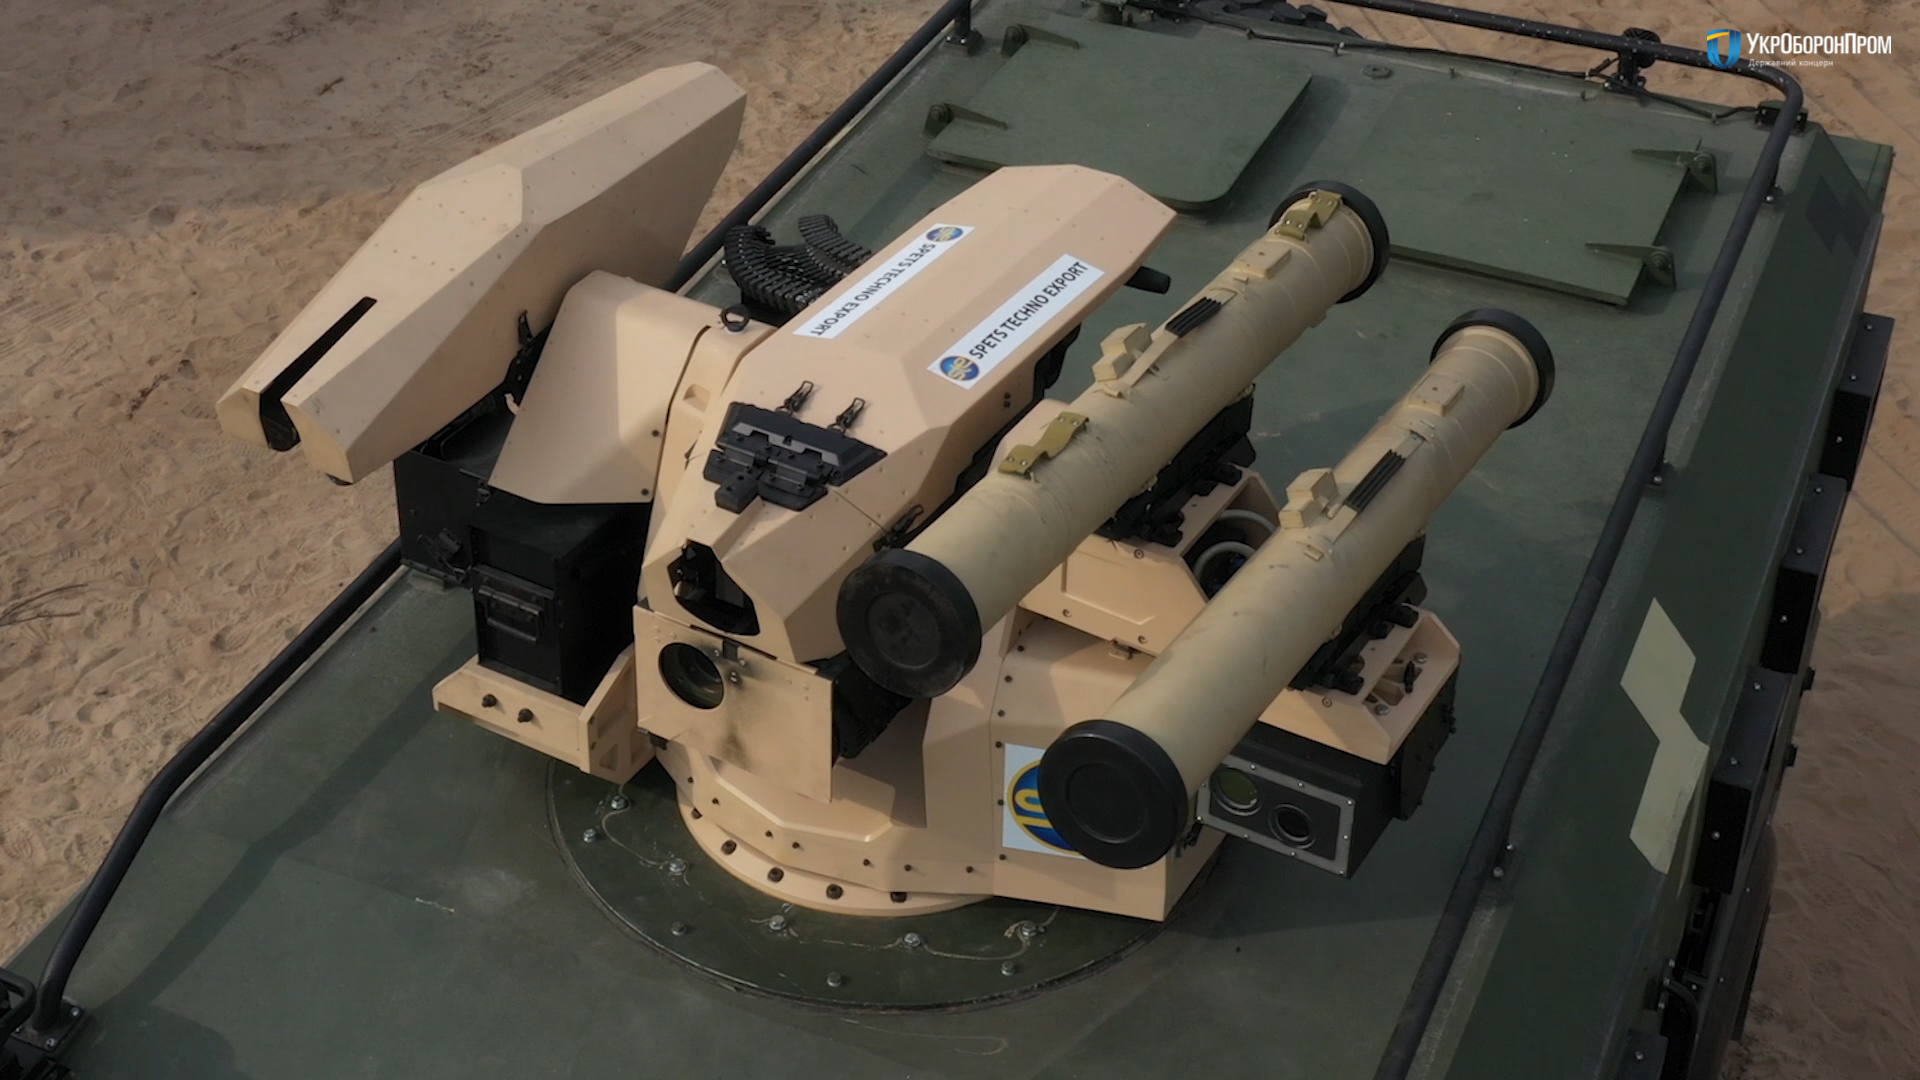 Die ukrainischen Streitkräfte verwenden gepanzerte Fahrzeuge mit der SERDAR-Kampfstation, die mit dem Panzerabwehrsystem "Skif" und zwei Maschinengewehren ausgestattet sind